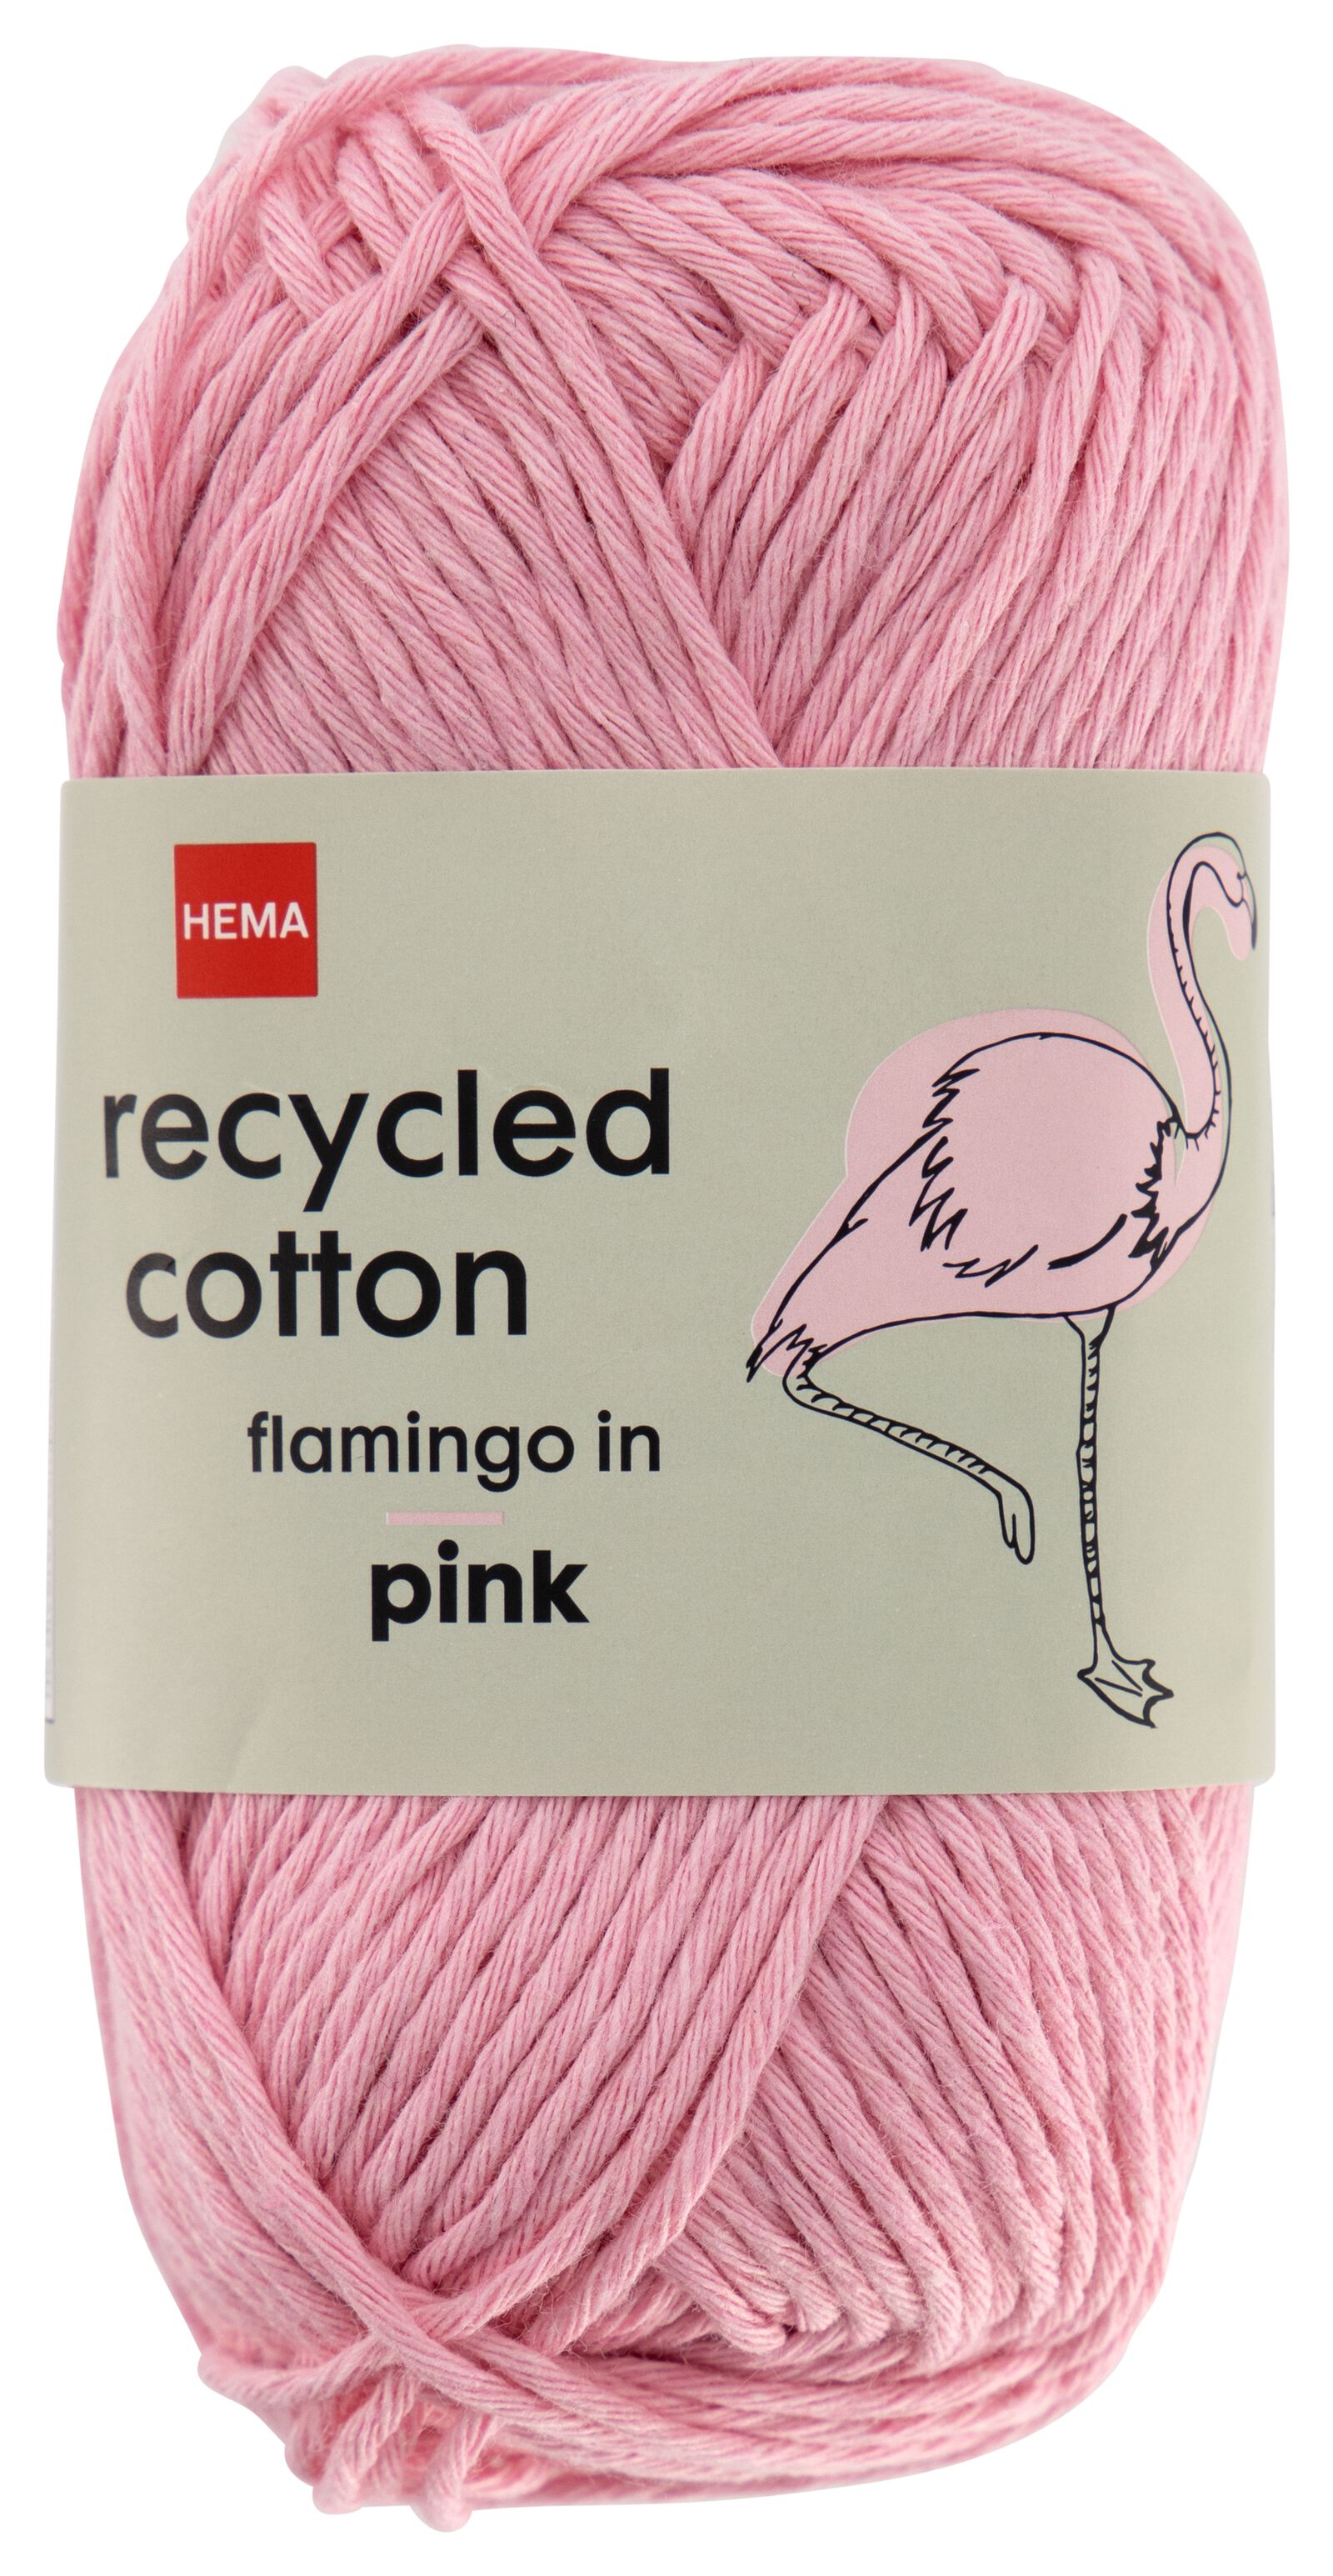 brei en haakgaren recycled katoen 85m roze roze recycled cotton - 1400244 - HEMA